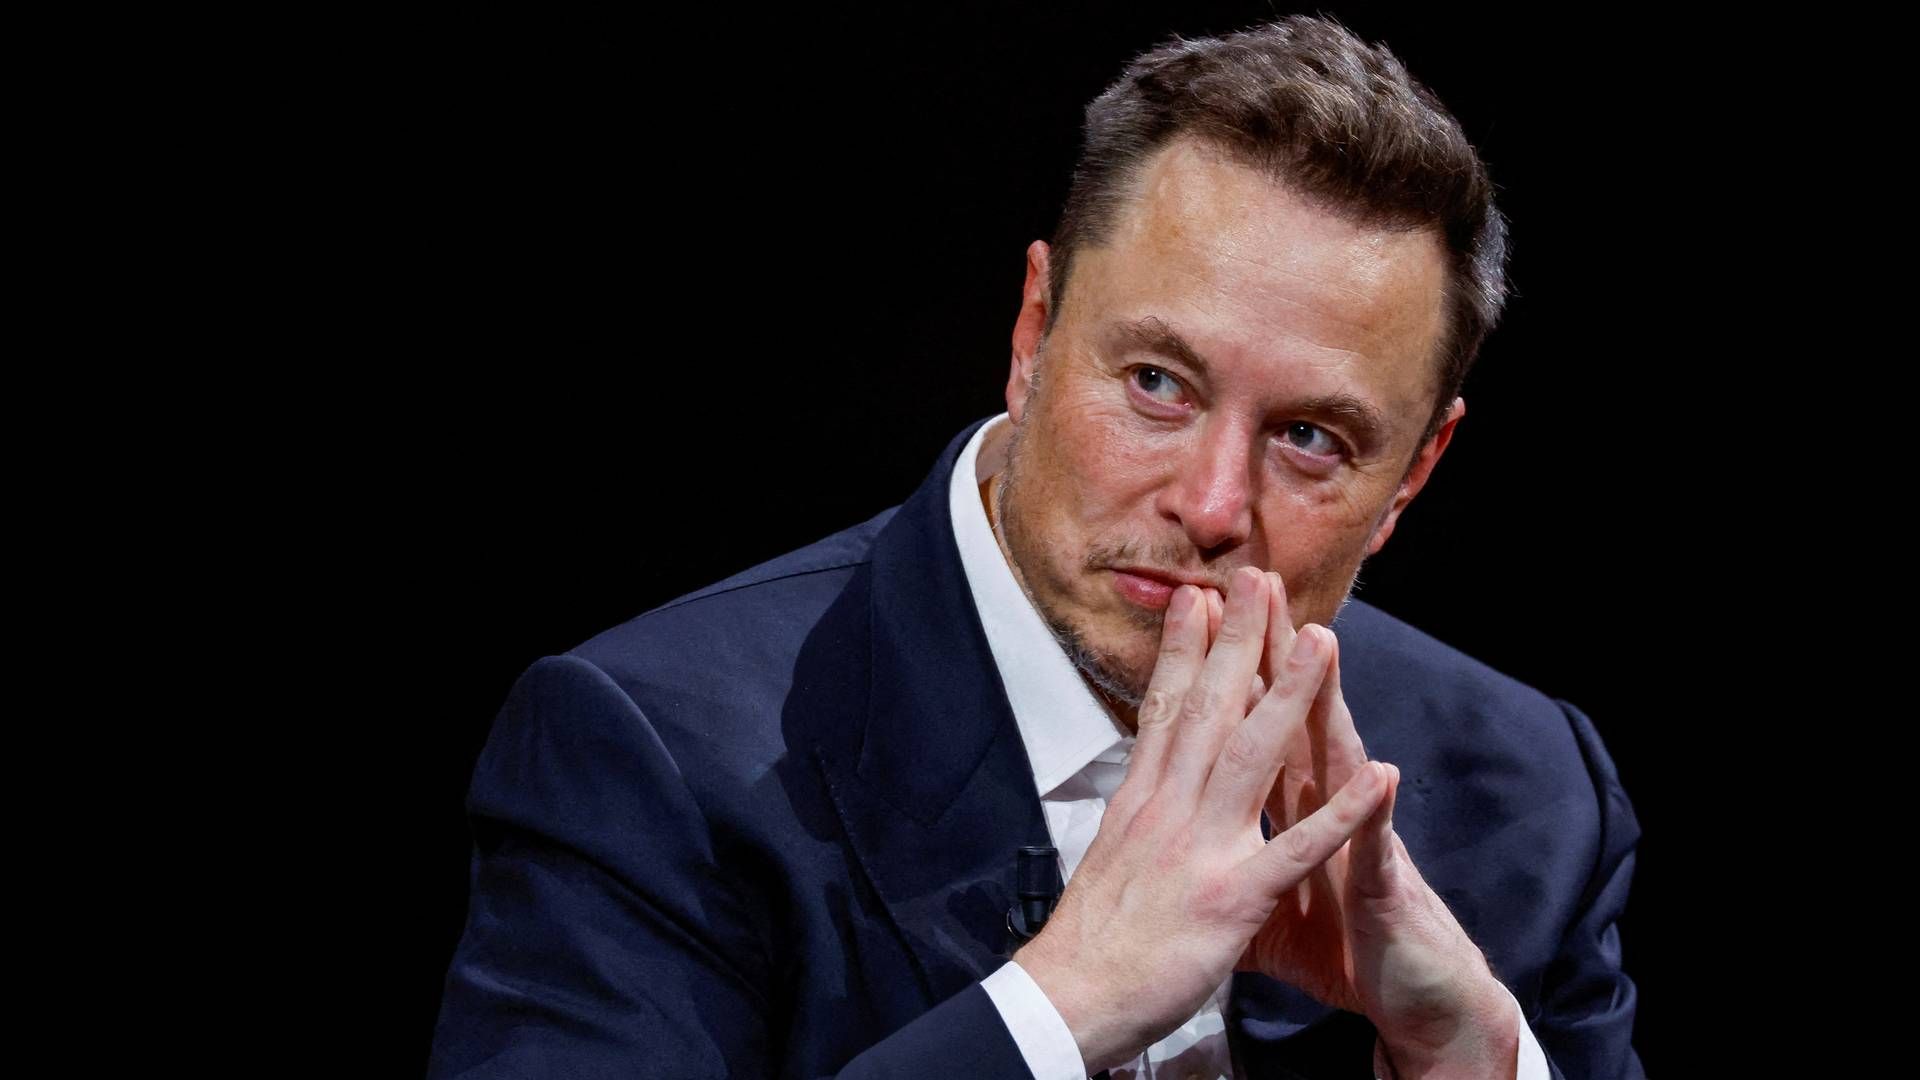 Elon Musk har været topchef for Tesla siden 2008 og indtager ledende roller i SpaceX og det sociale medie X. | Foto: Gonzalo Fuentes/Reuters/Ritzau Scanpix